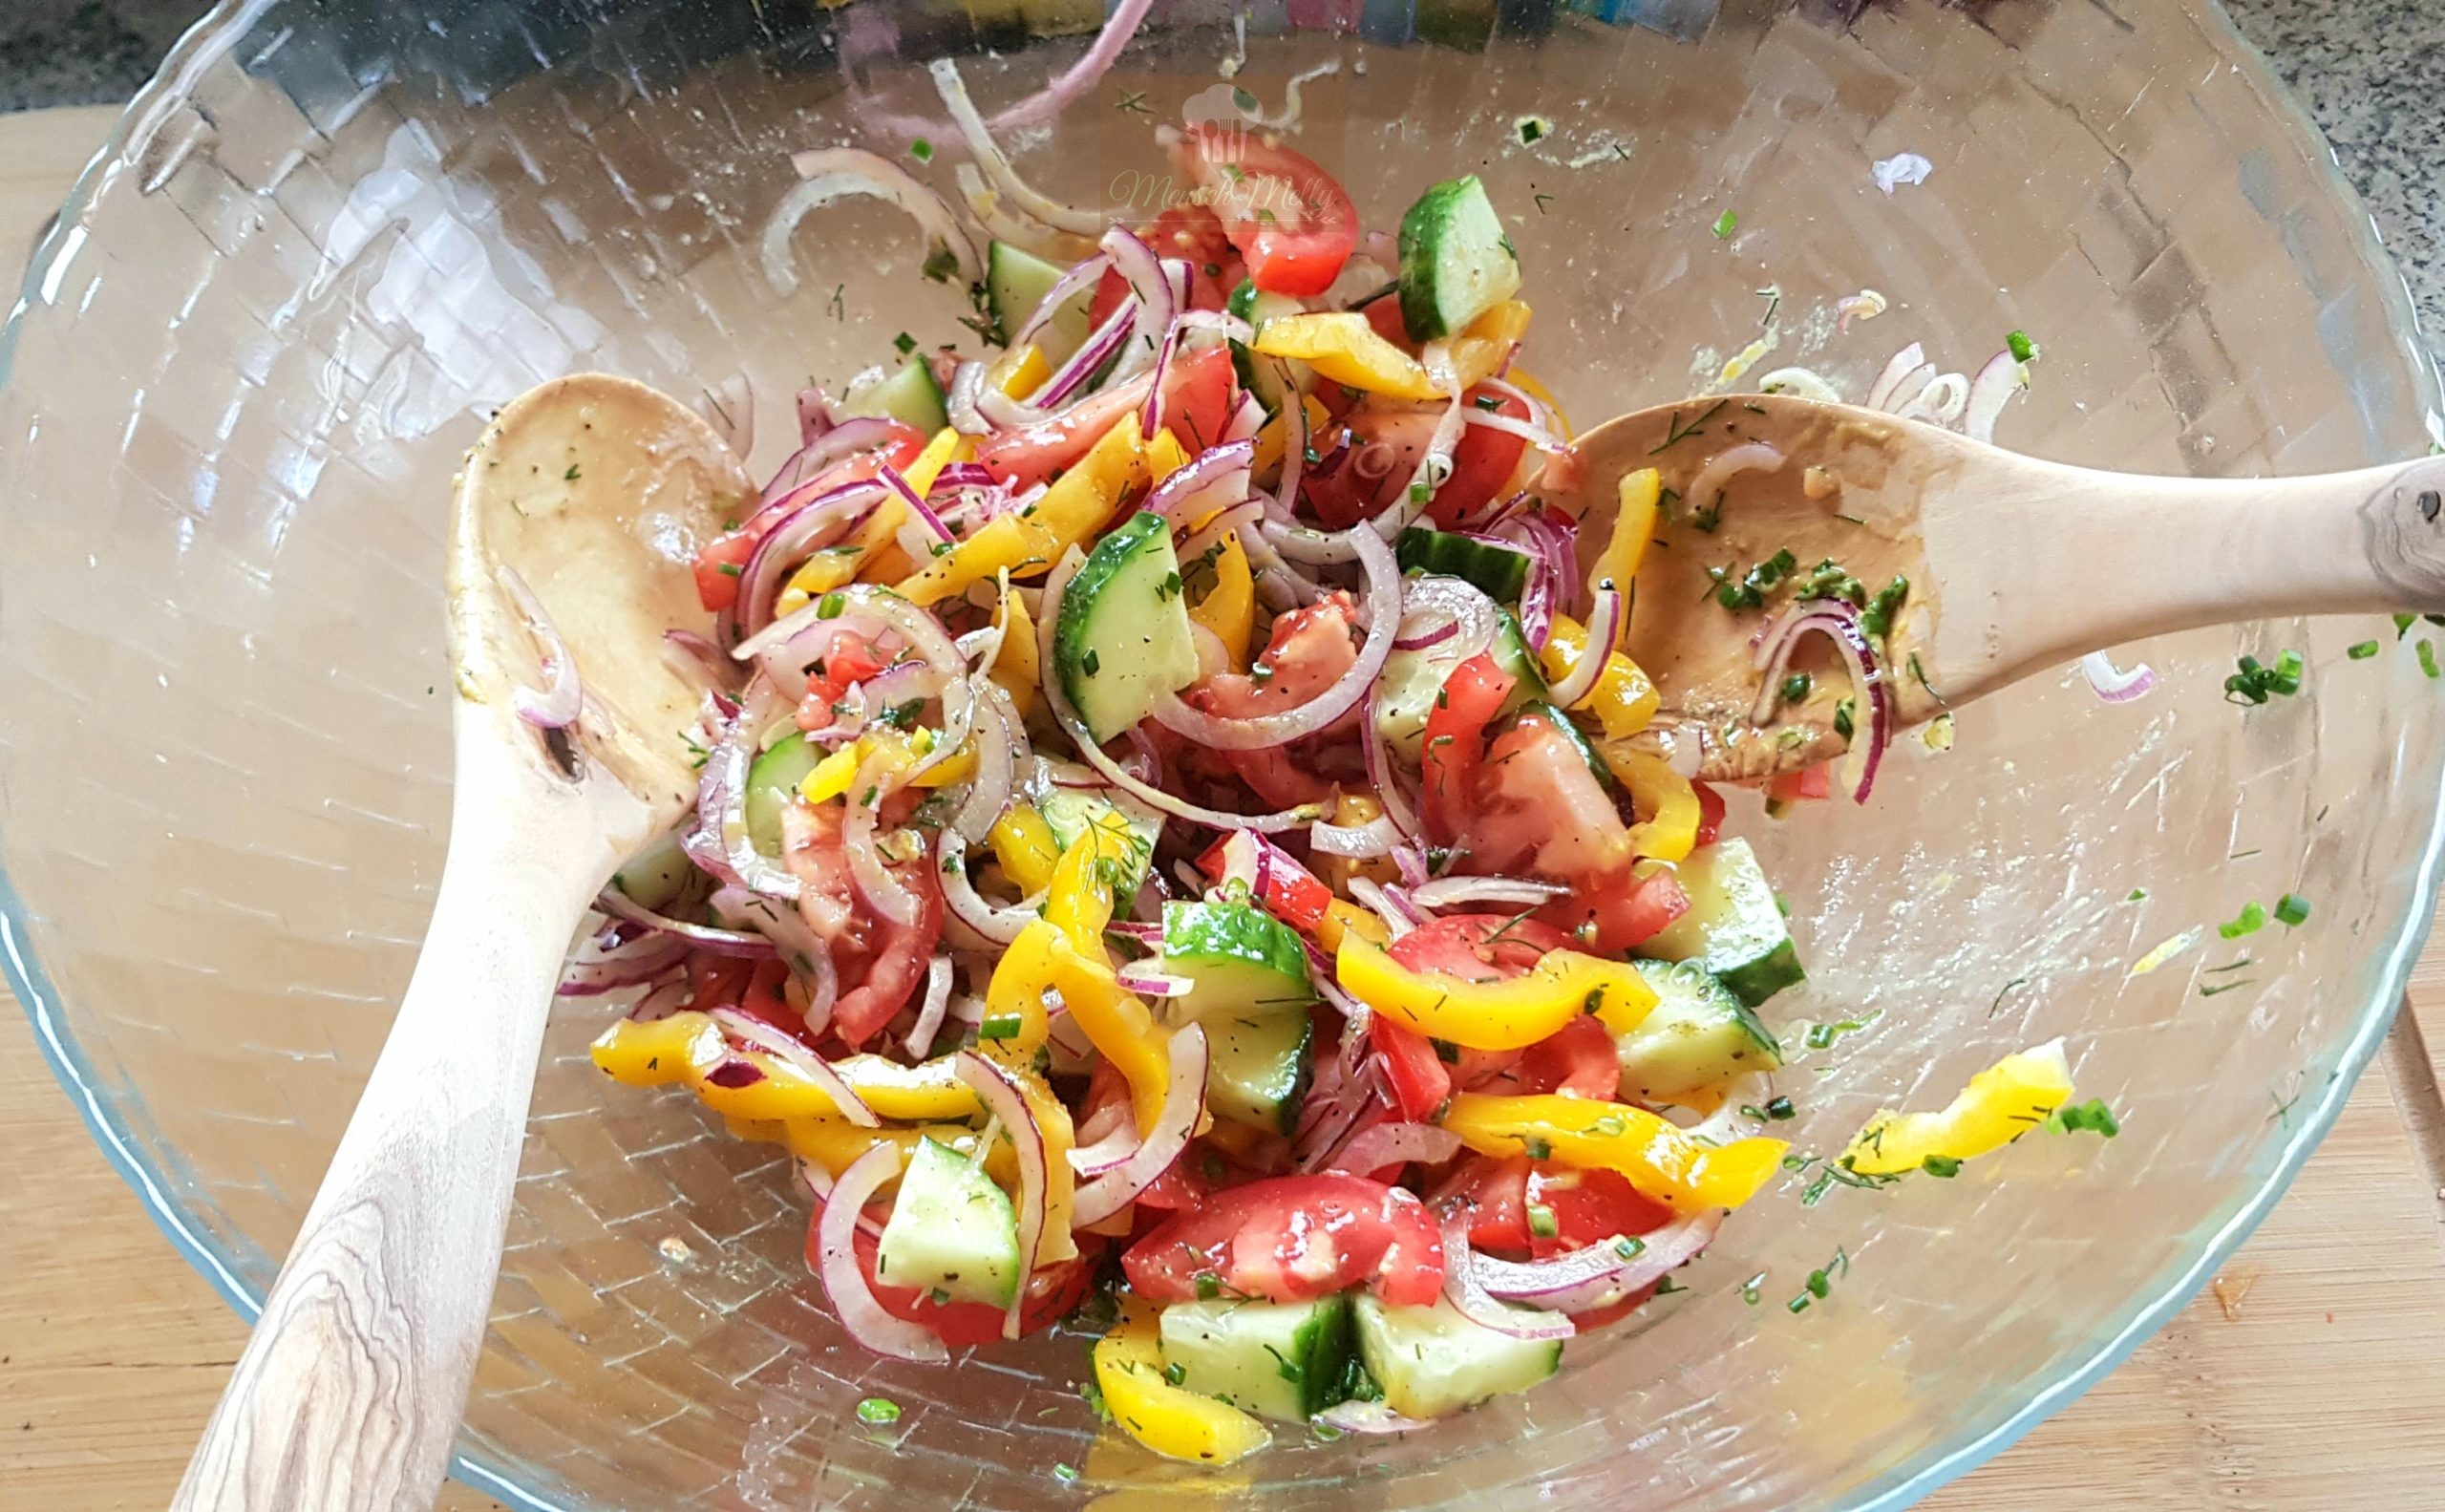 Bunter Salat mit Hähnchenstreifen – Mensch Melly